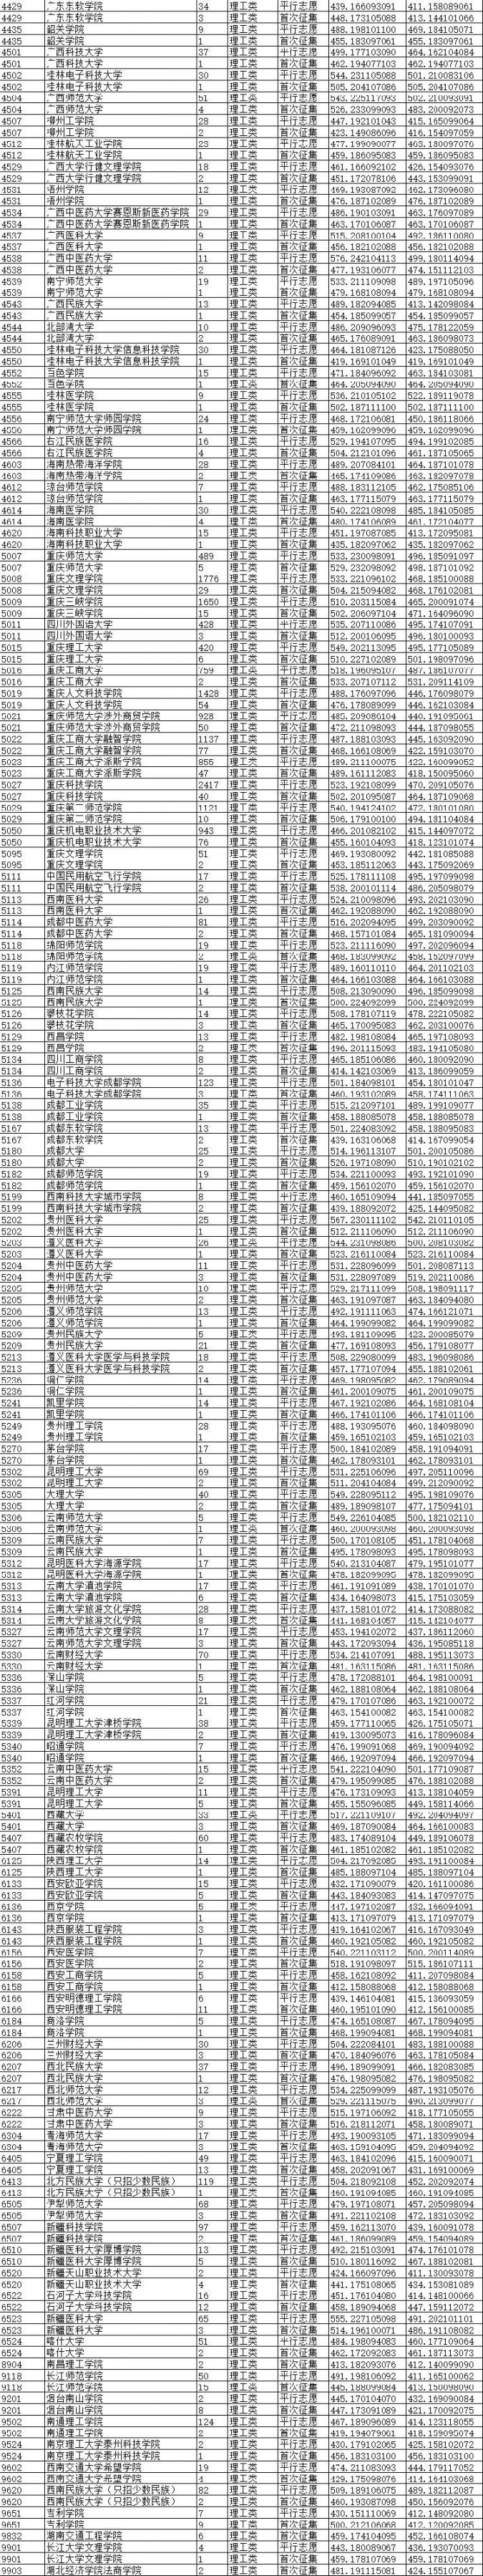 2020重庆高考二本录取信息表